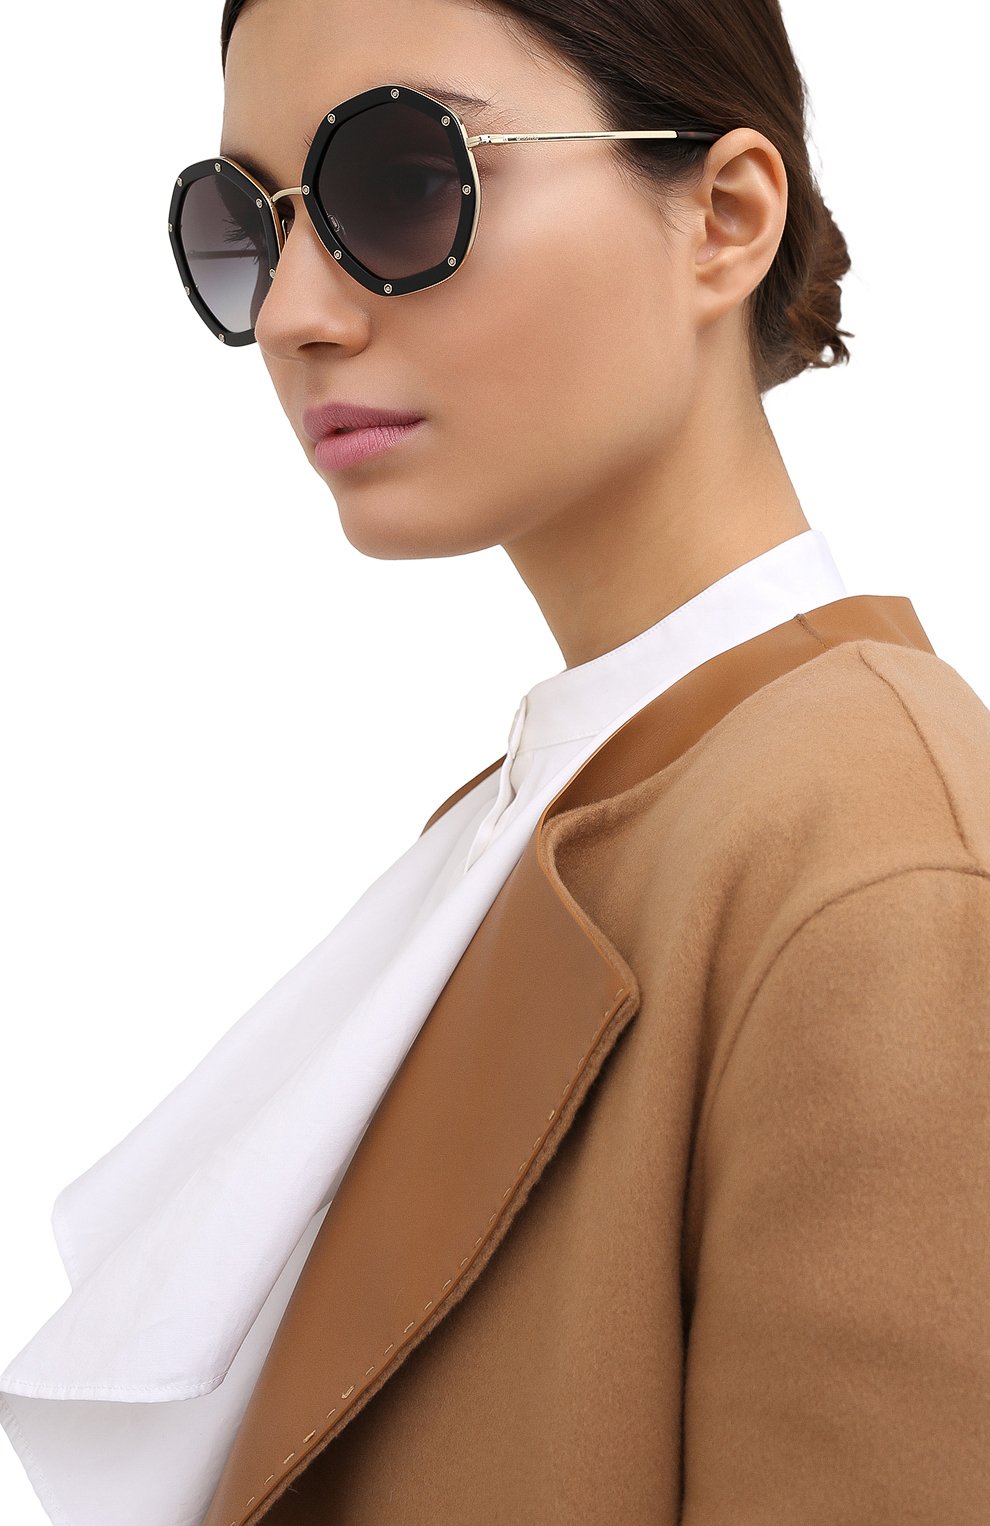 купить очки солнцезащитные на валберис женские